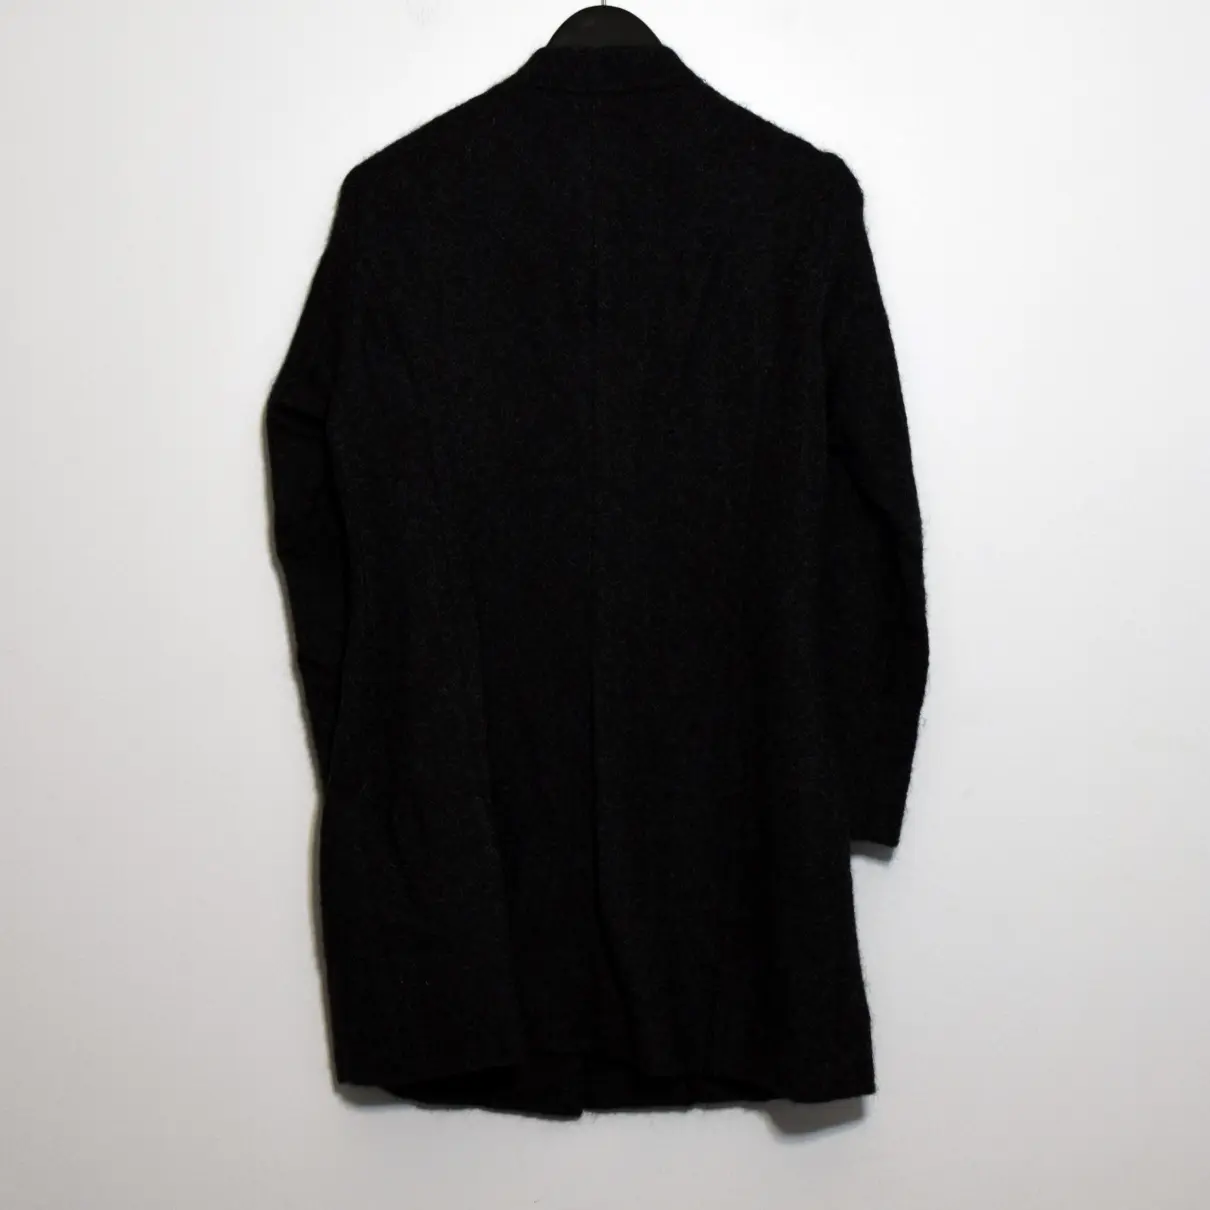 Buy SARAH PACINI Wool coat online